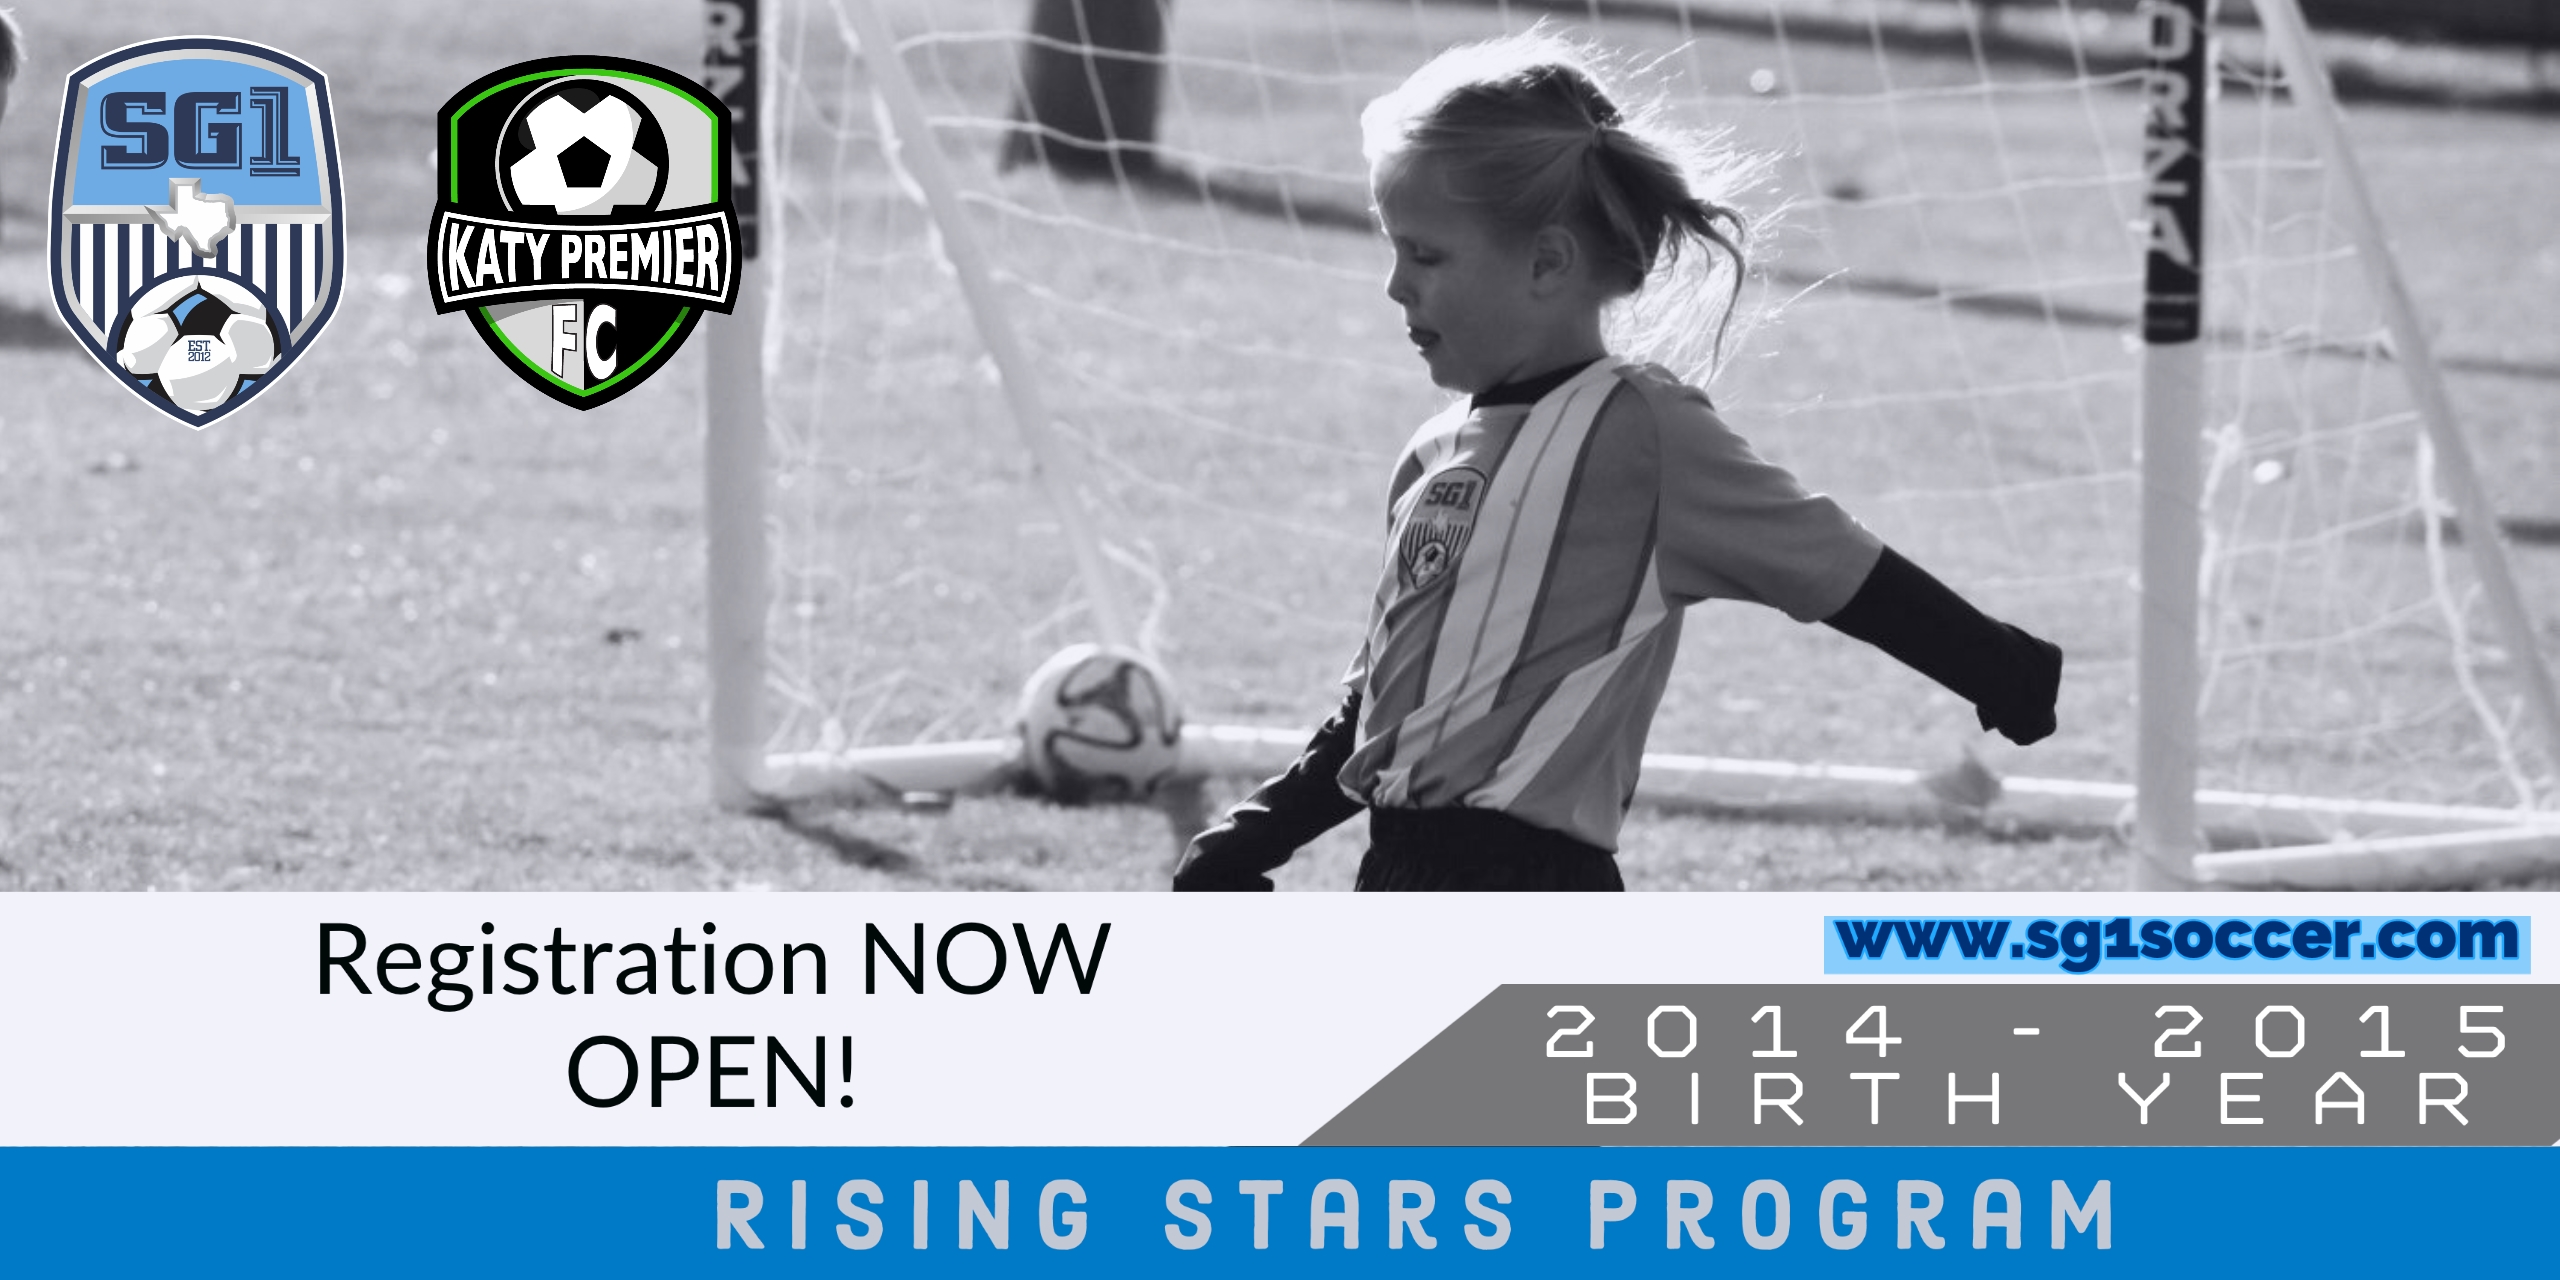 Rising Stars Program - Registration NOW OPEN!